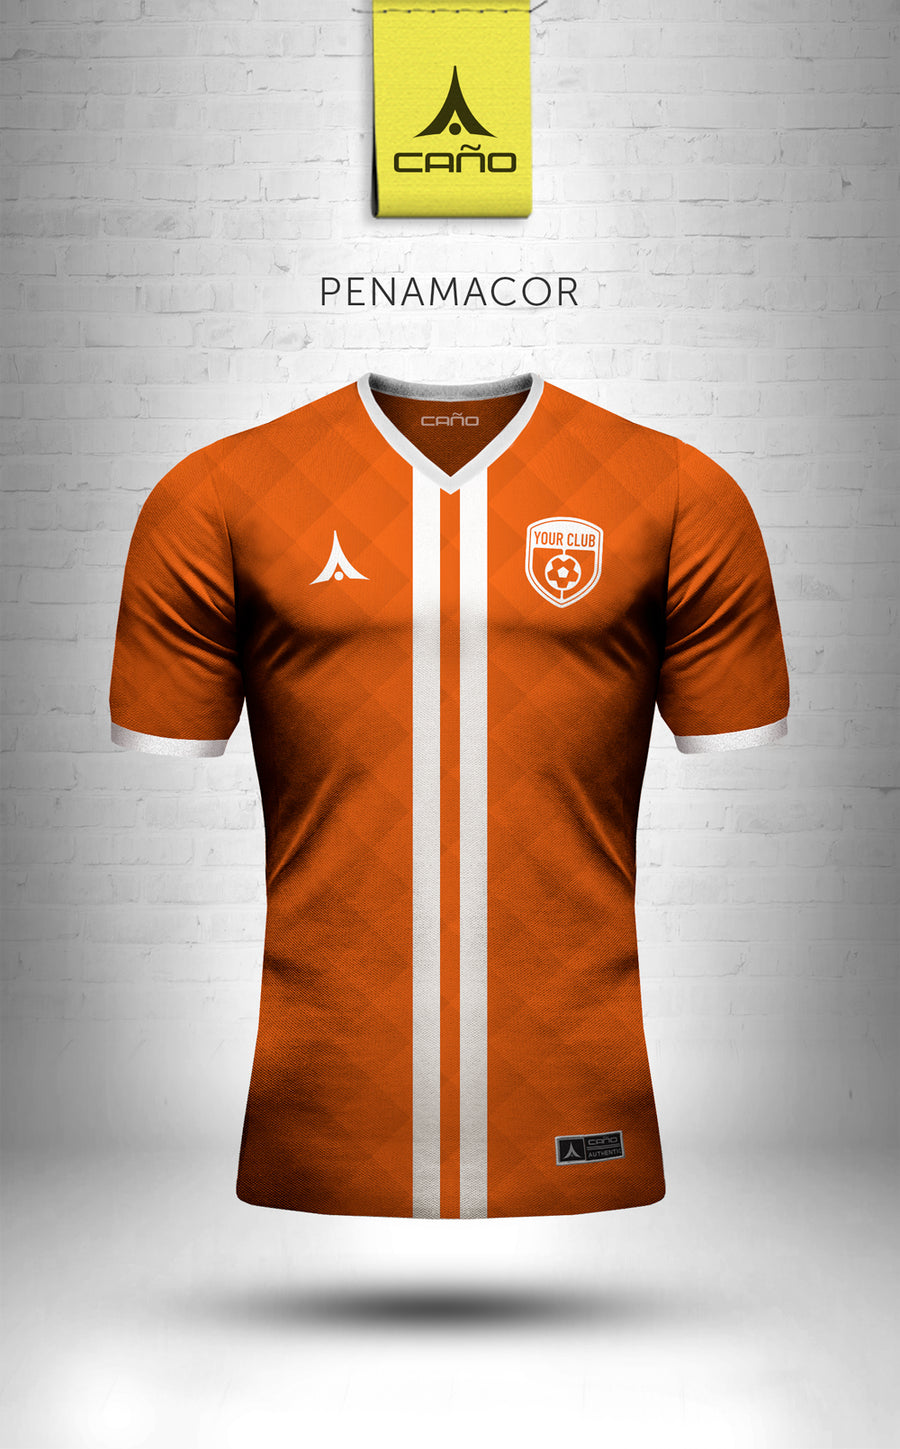 Penamacor in orange/white